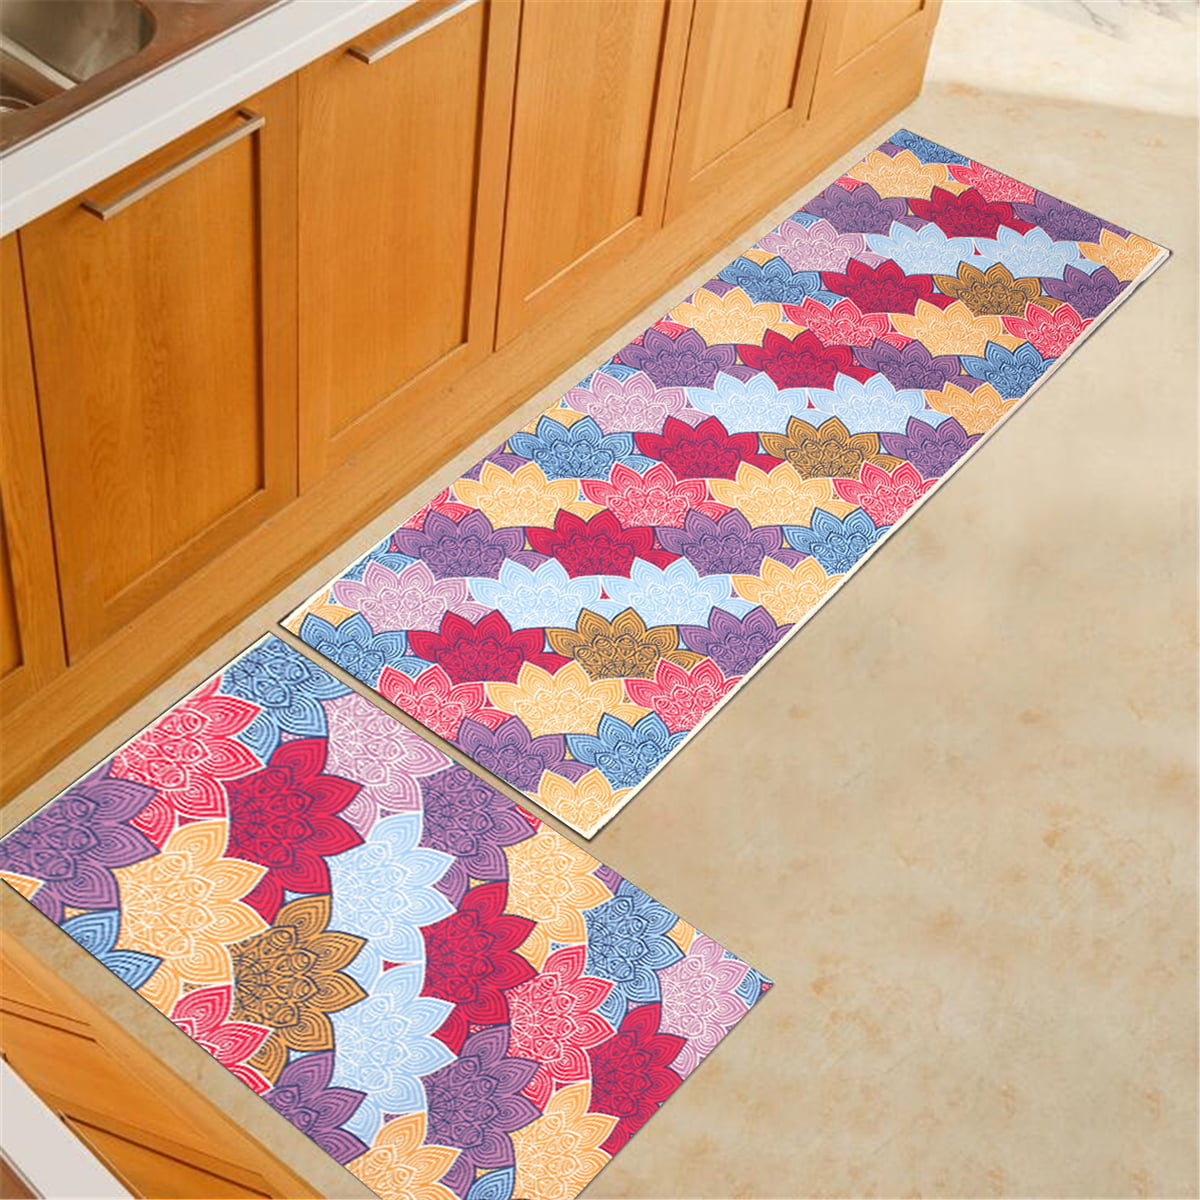 Details about   Non-Slip Area Rugs Floor Mats Door Carpet For Kitchen Bathroom Bedroom 